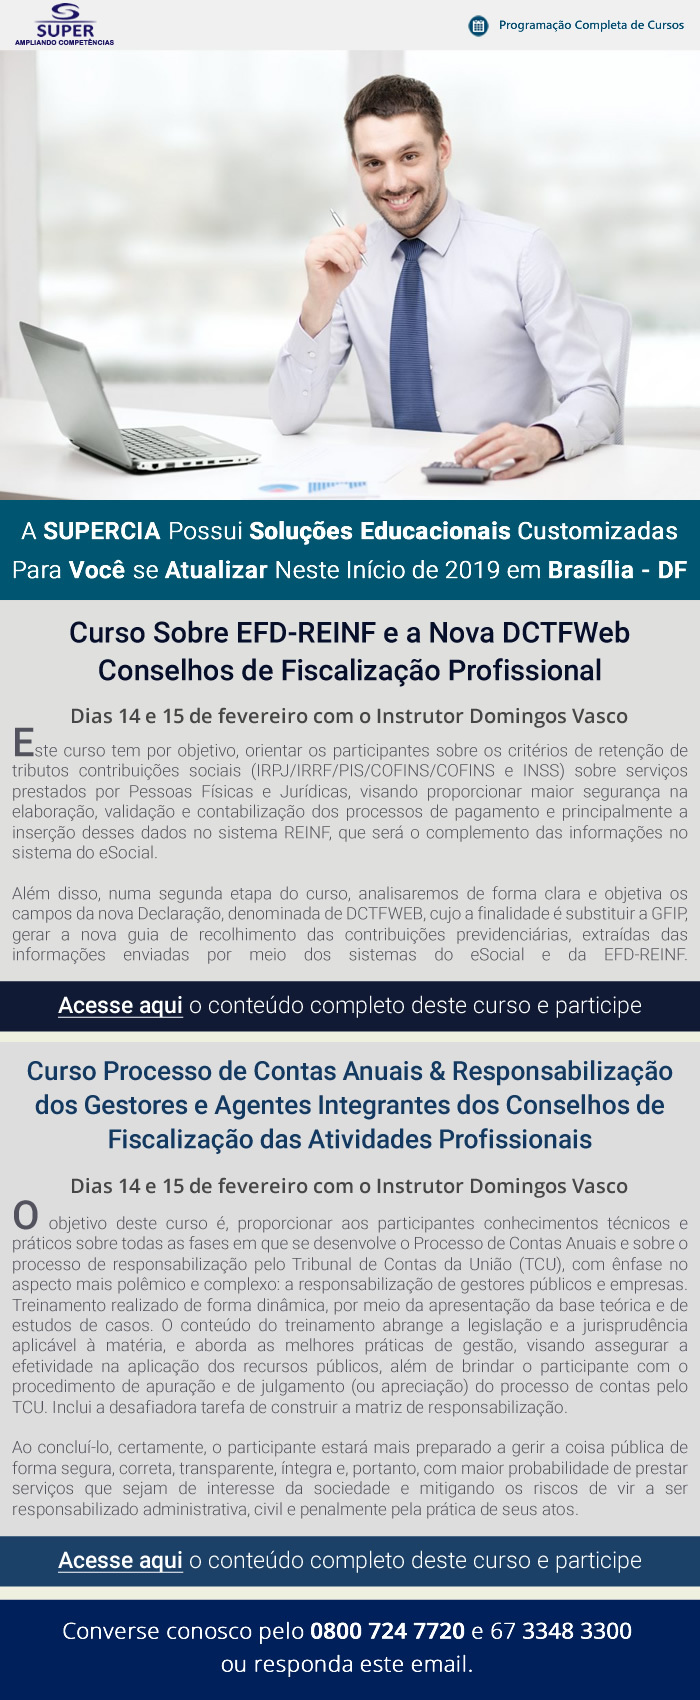 A SUPERCIA Possui Soluções Educacionais Customizadas  Para Você se Atualizar Neste Início de 2019 em Brasília - DF